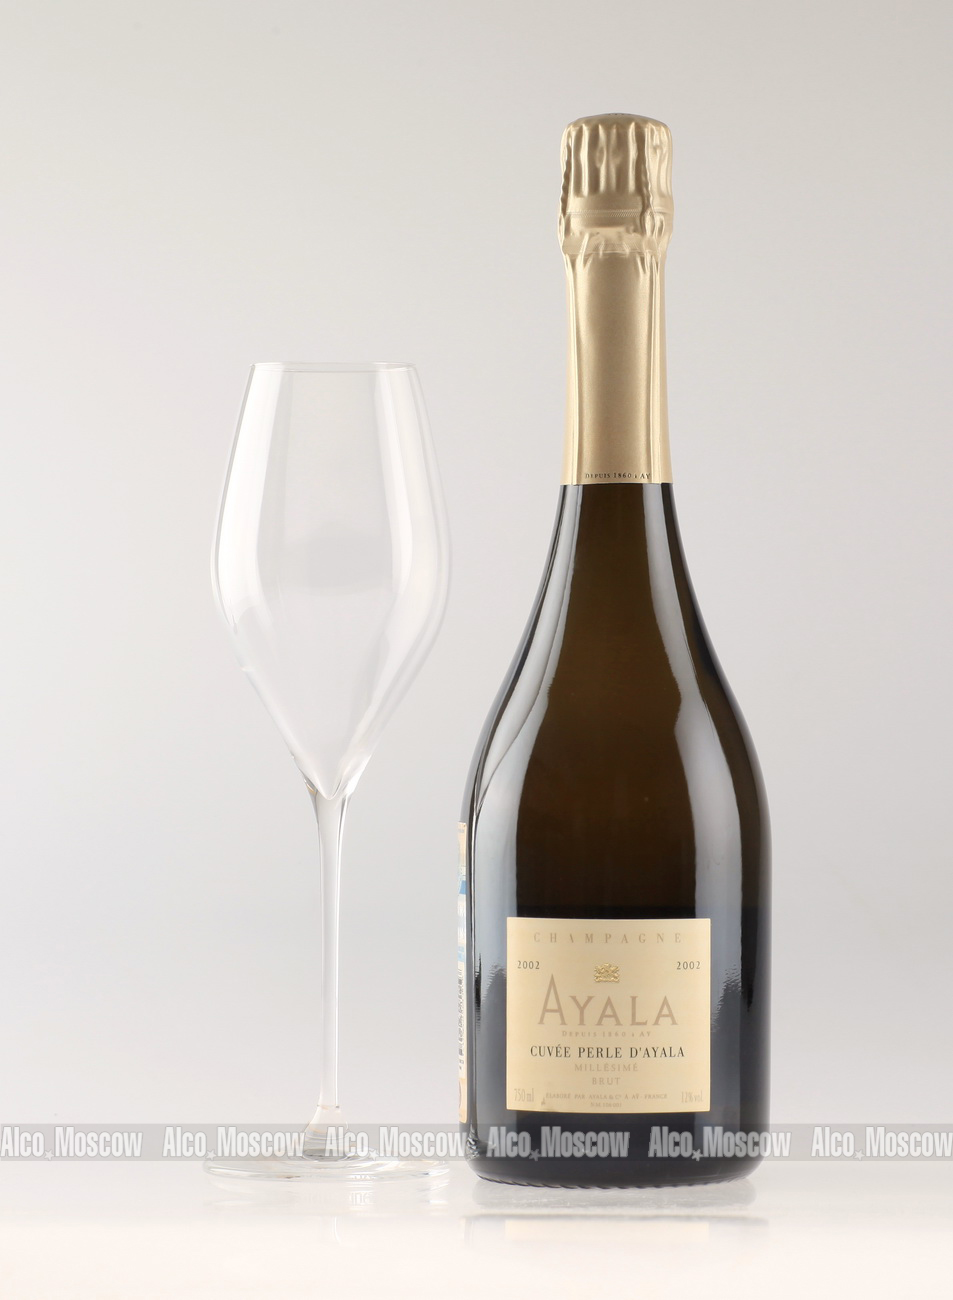 Ayala Cuvee Perle D Ayala 2002 шампанское Айала Кюве Перль Д Айала 2002 года